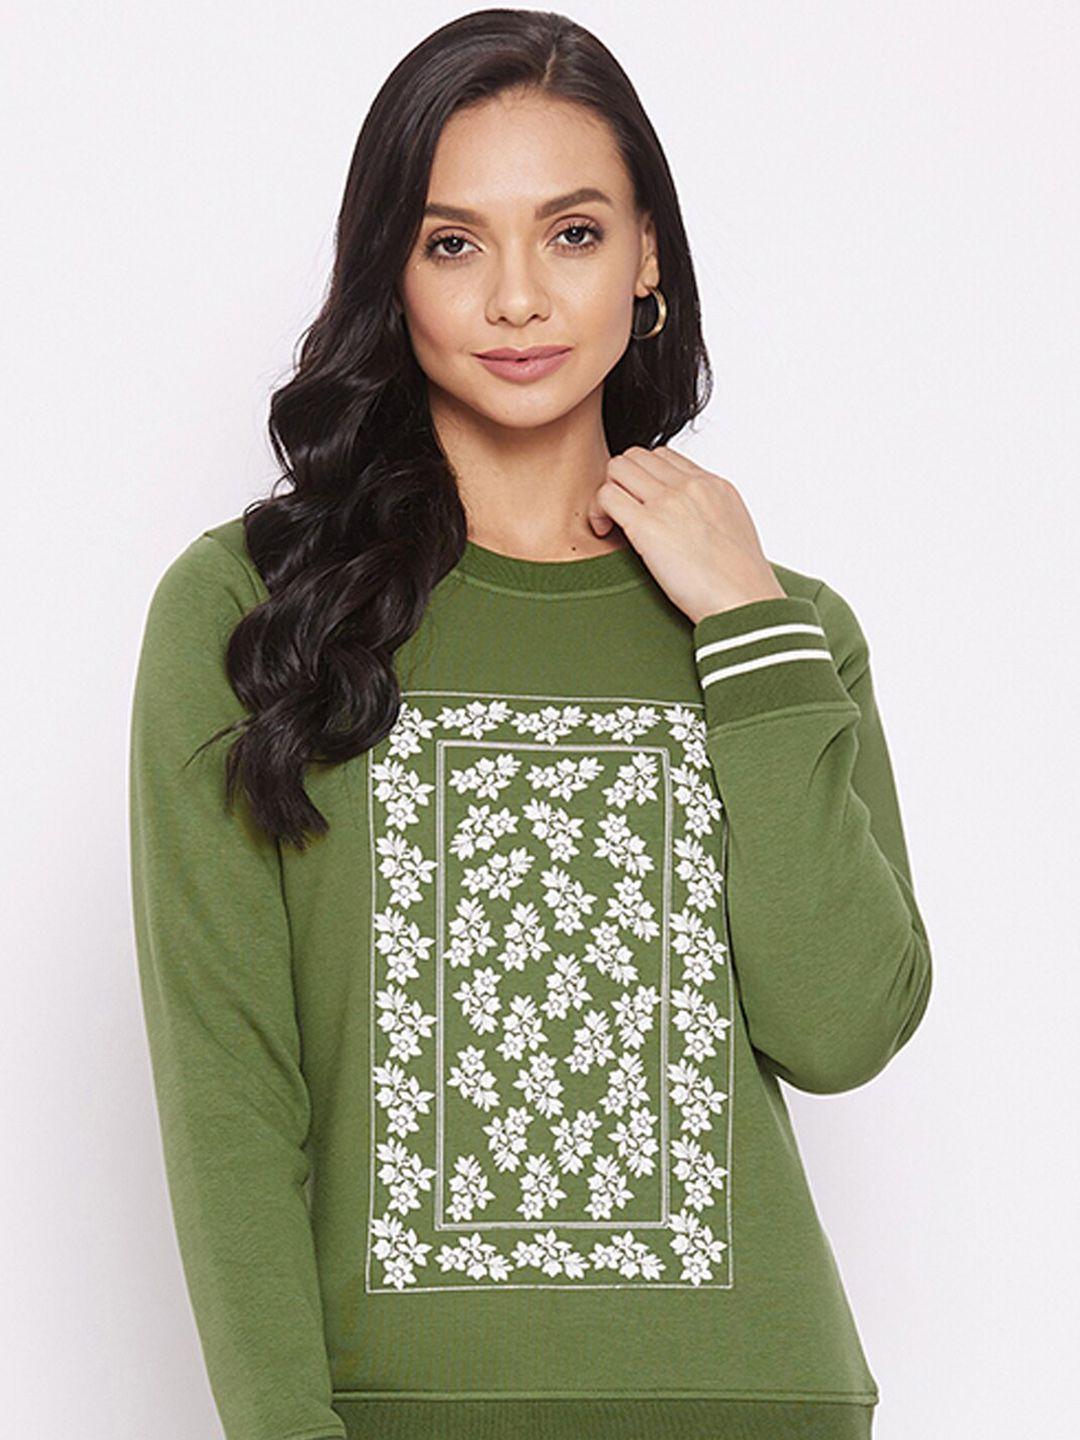 harbor-n-bay-floral-printed-fleece-sweatshirt